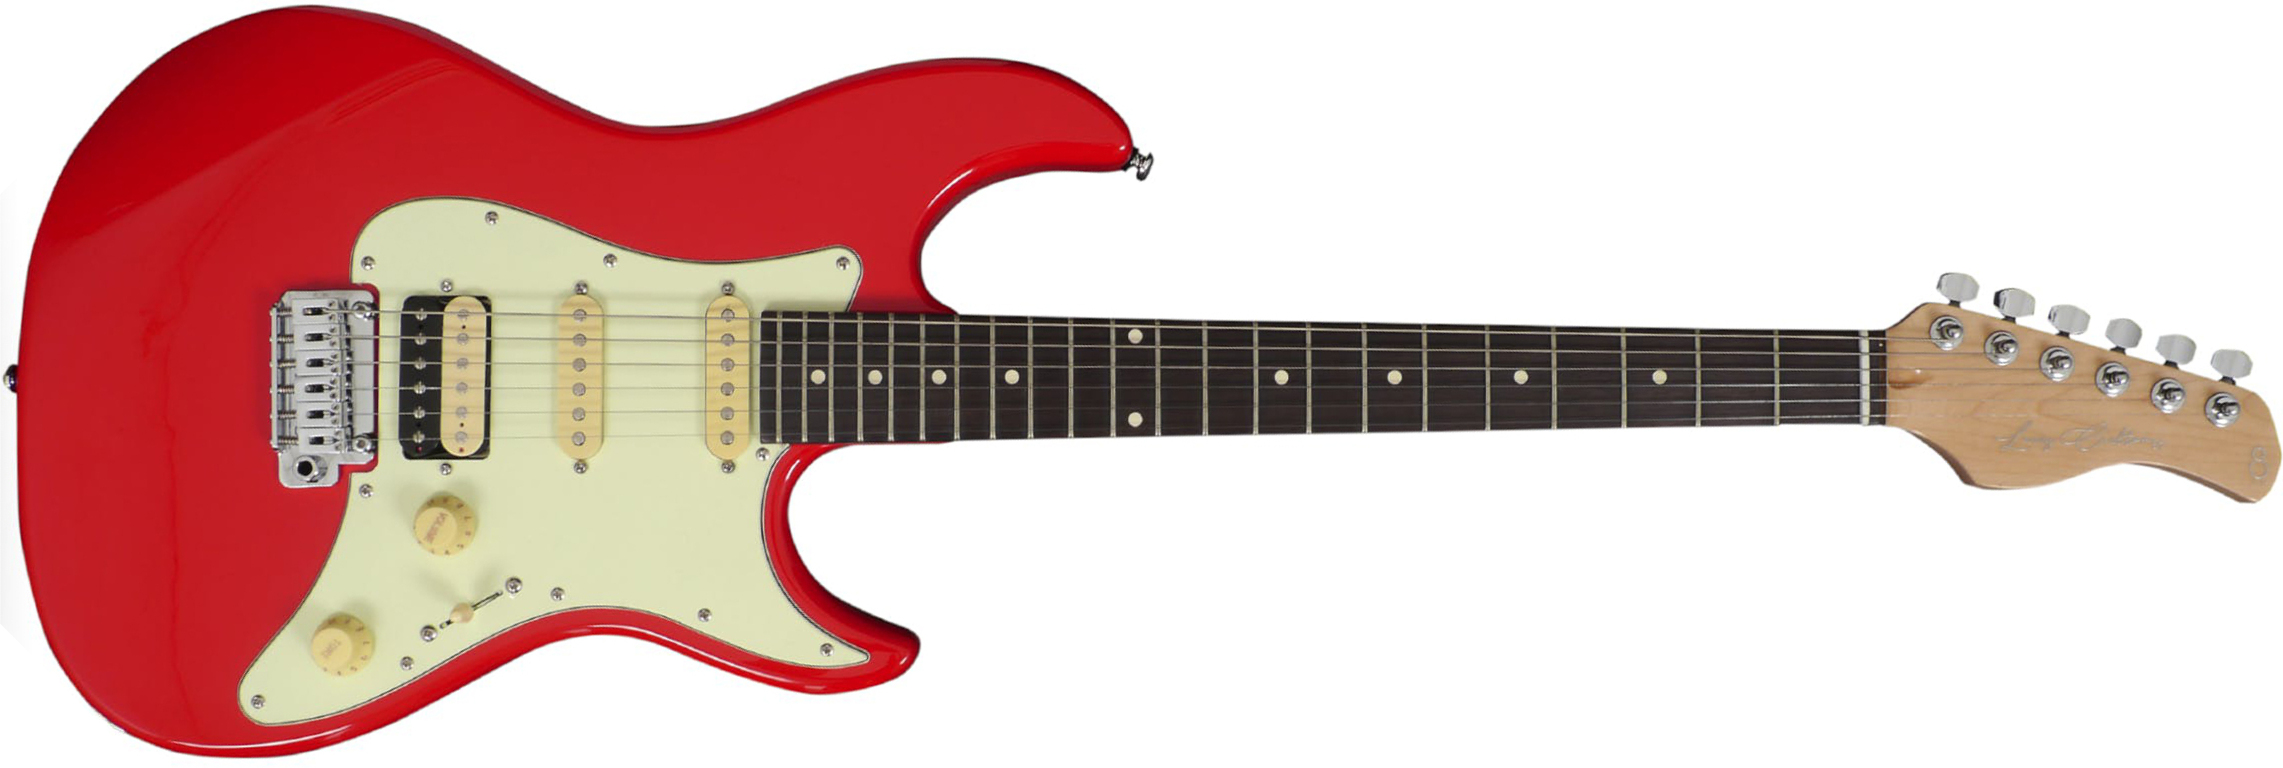 Sire Larry Carlton S3 Signature Hss Trem Rw - Dakota Red - Guitare Électrique Forme Str - Main picture